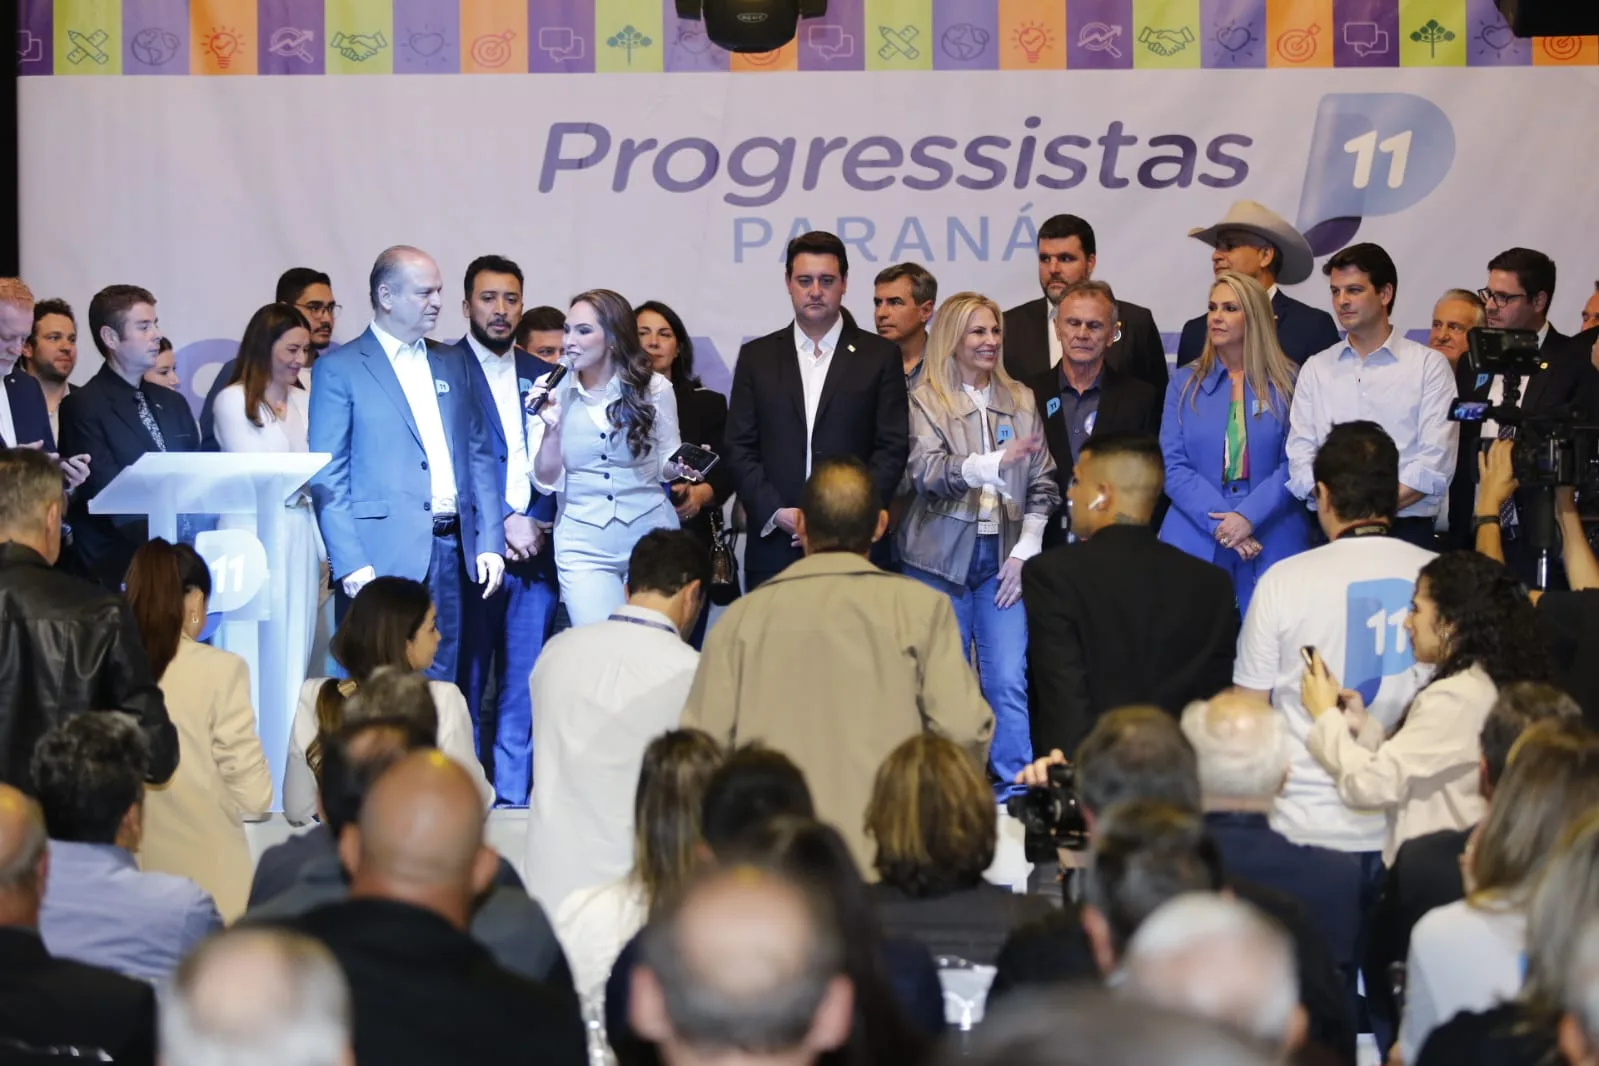 PP reúne pré-candidatos de todas as regiões em evento de capacitação nesta segunda